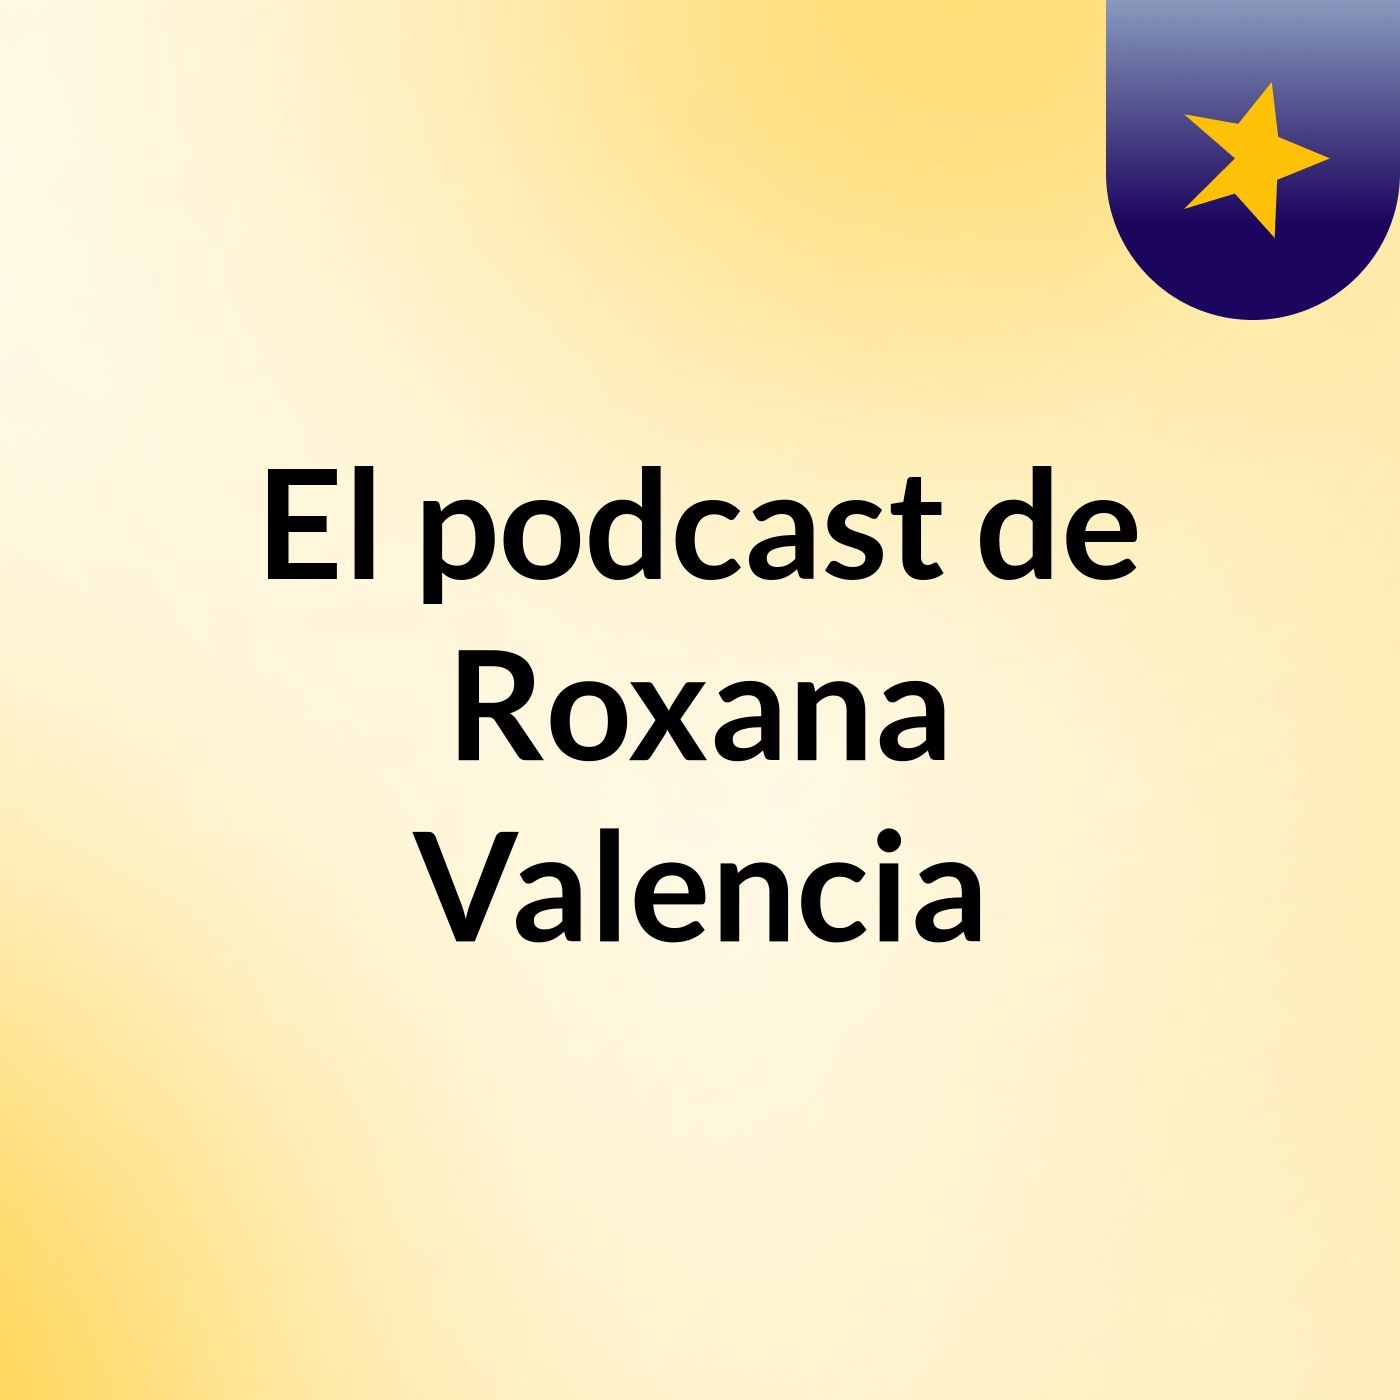 El podcast de Roxana Valencia